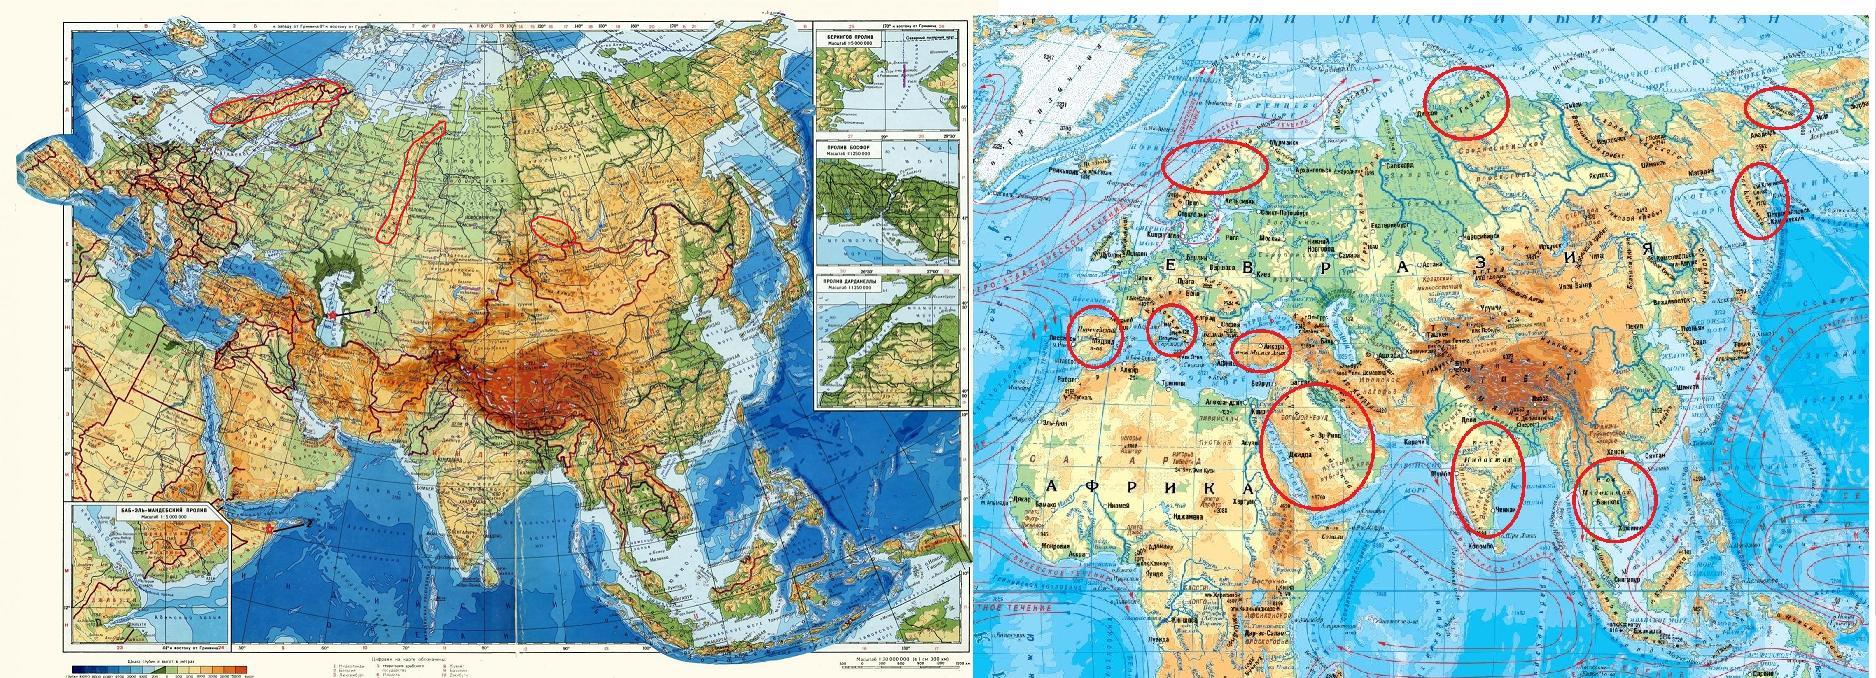 Берега евразии омывают моря каких океанов. Евразия занимает. Граница Европы и Азии на карте Евразии. Какре место занимает Евразия по площади. Объединенная Евразия.